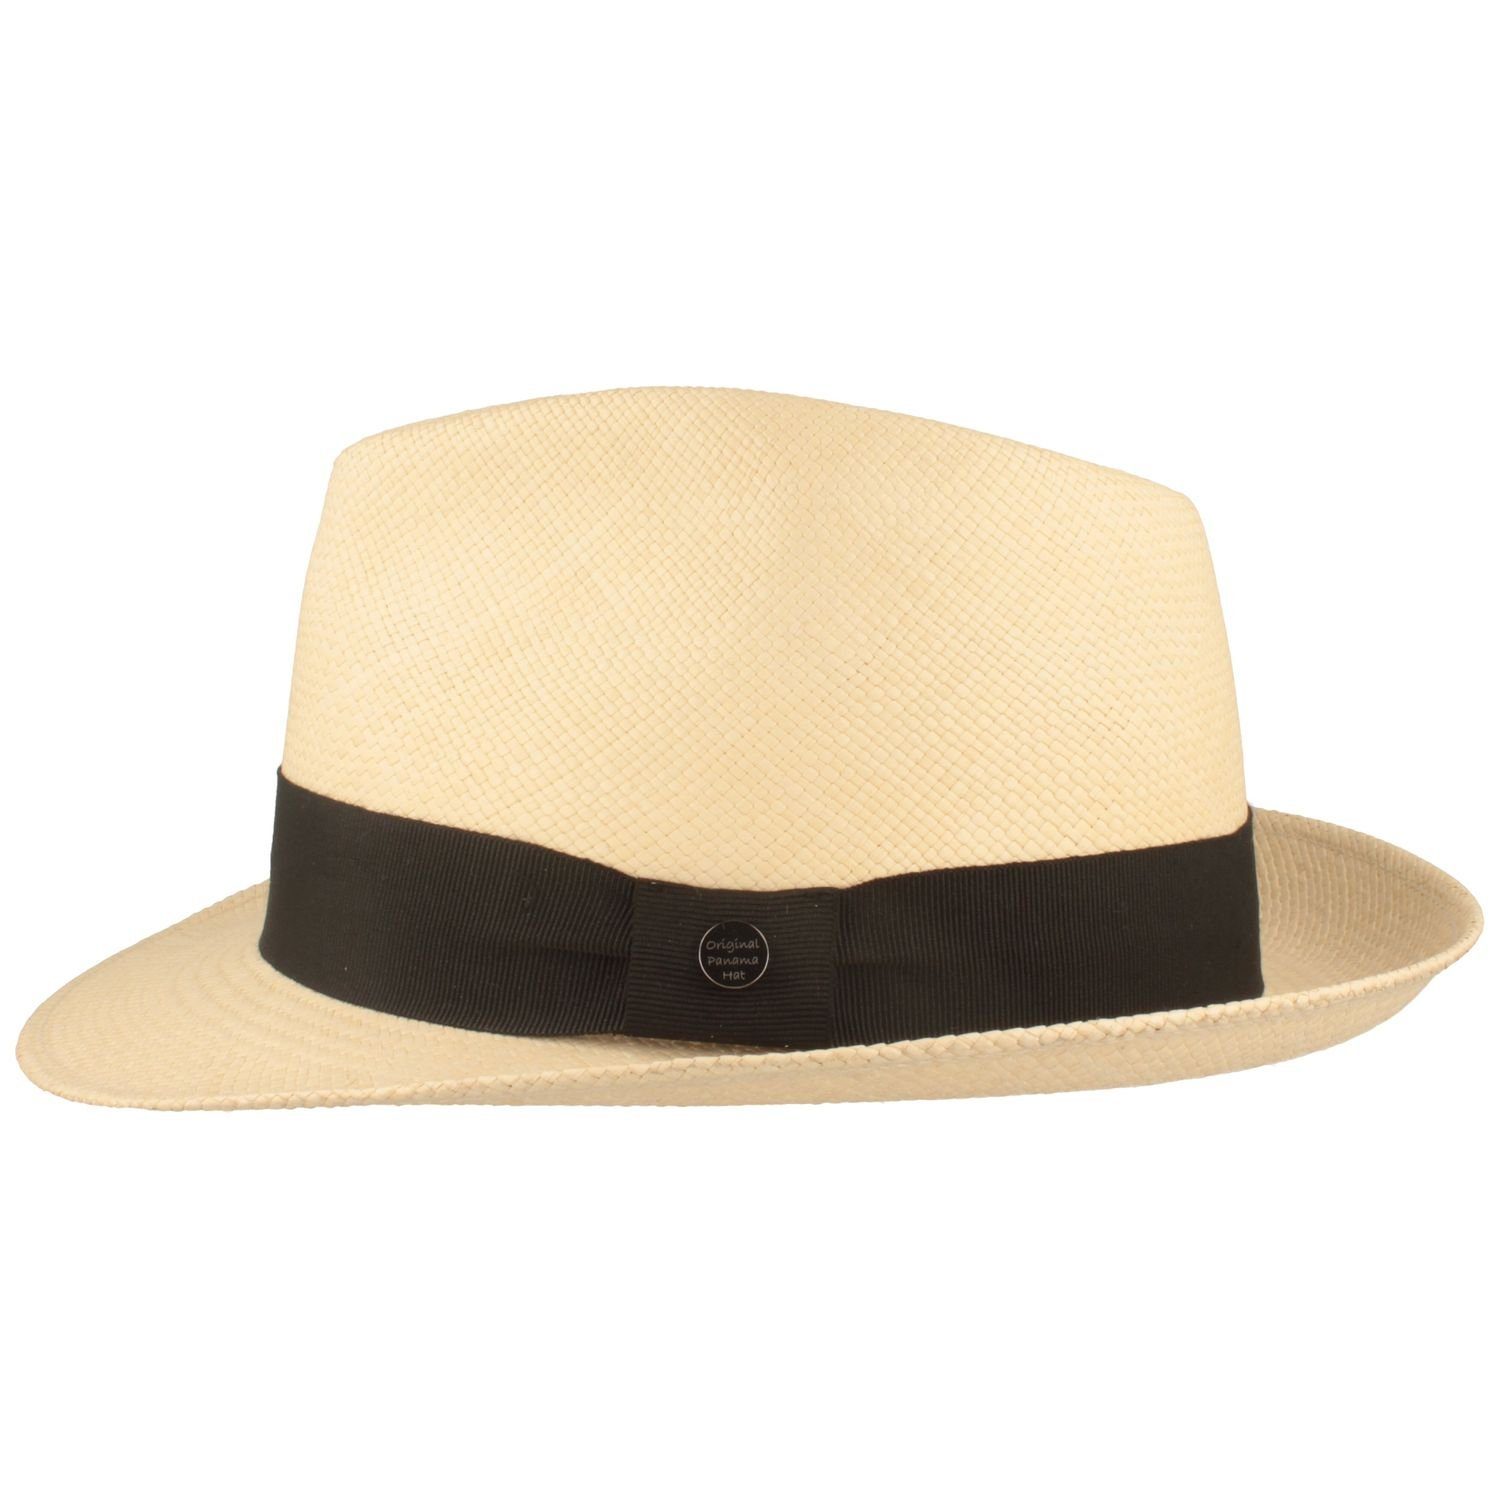 Breiter Strohhut Trilby natur/BD 50+ Panama UV-Schutz mit Garnitur sz moderner Hut